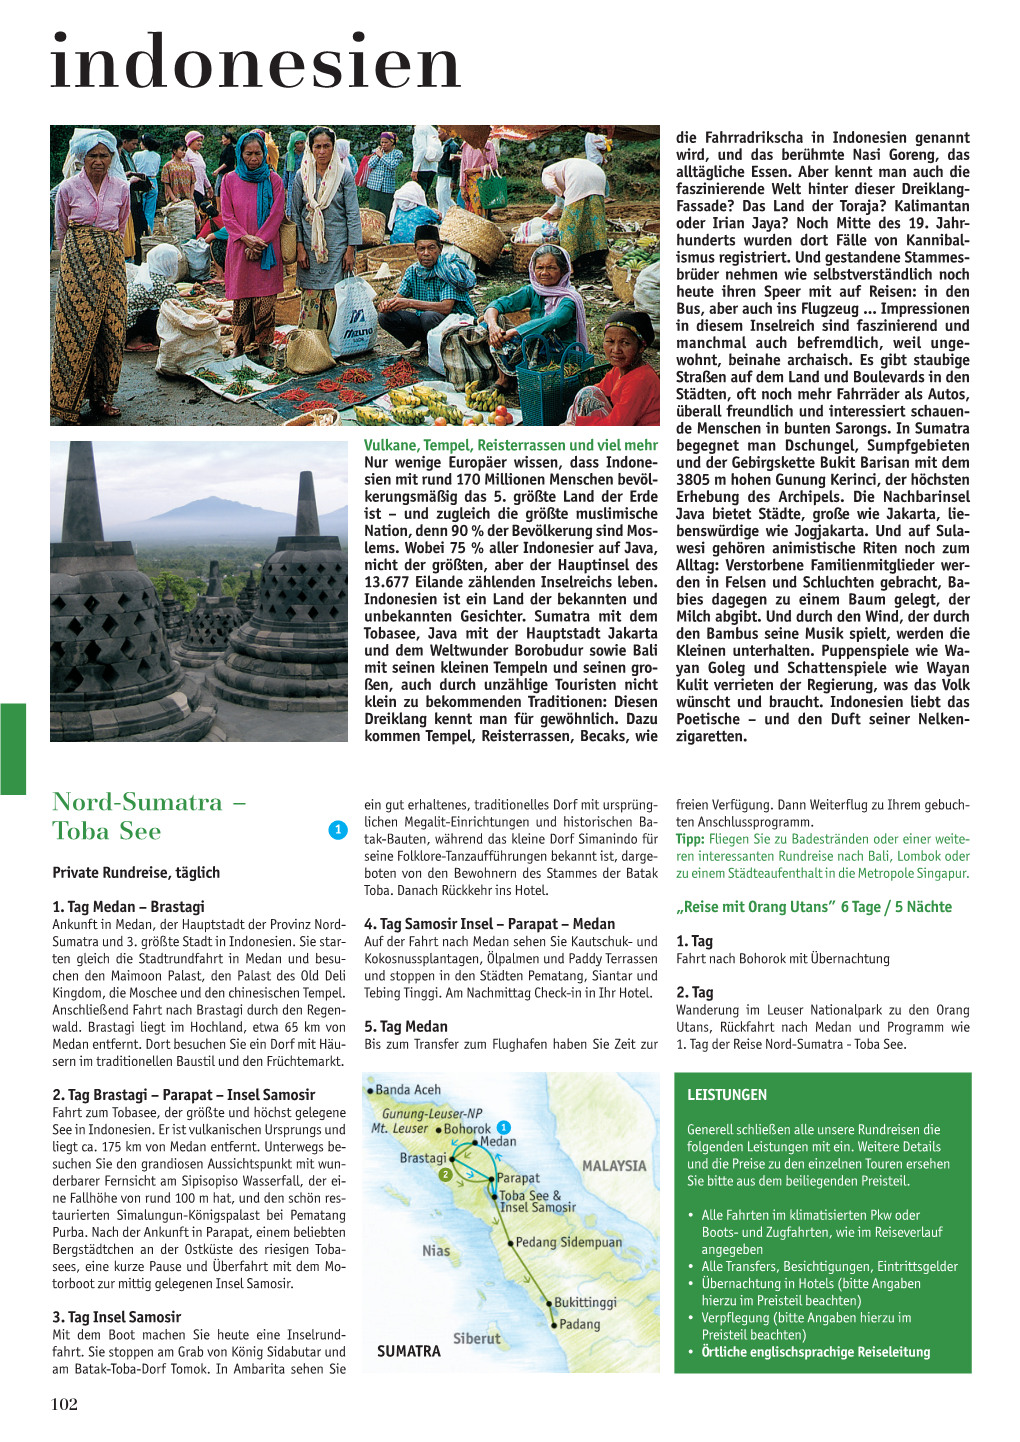 Indonesien-10 82-104-Indonesienok.Qxd 29.11.10 15:51 Seite 102 Indonesien